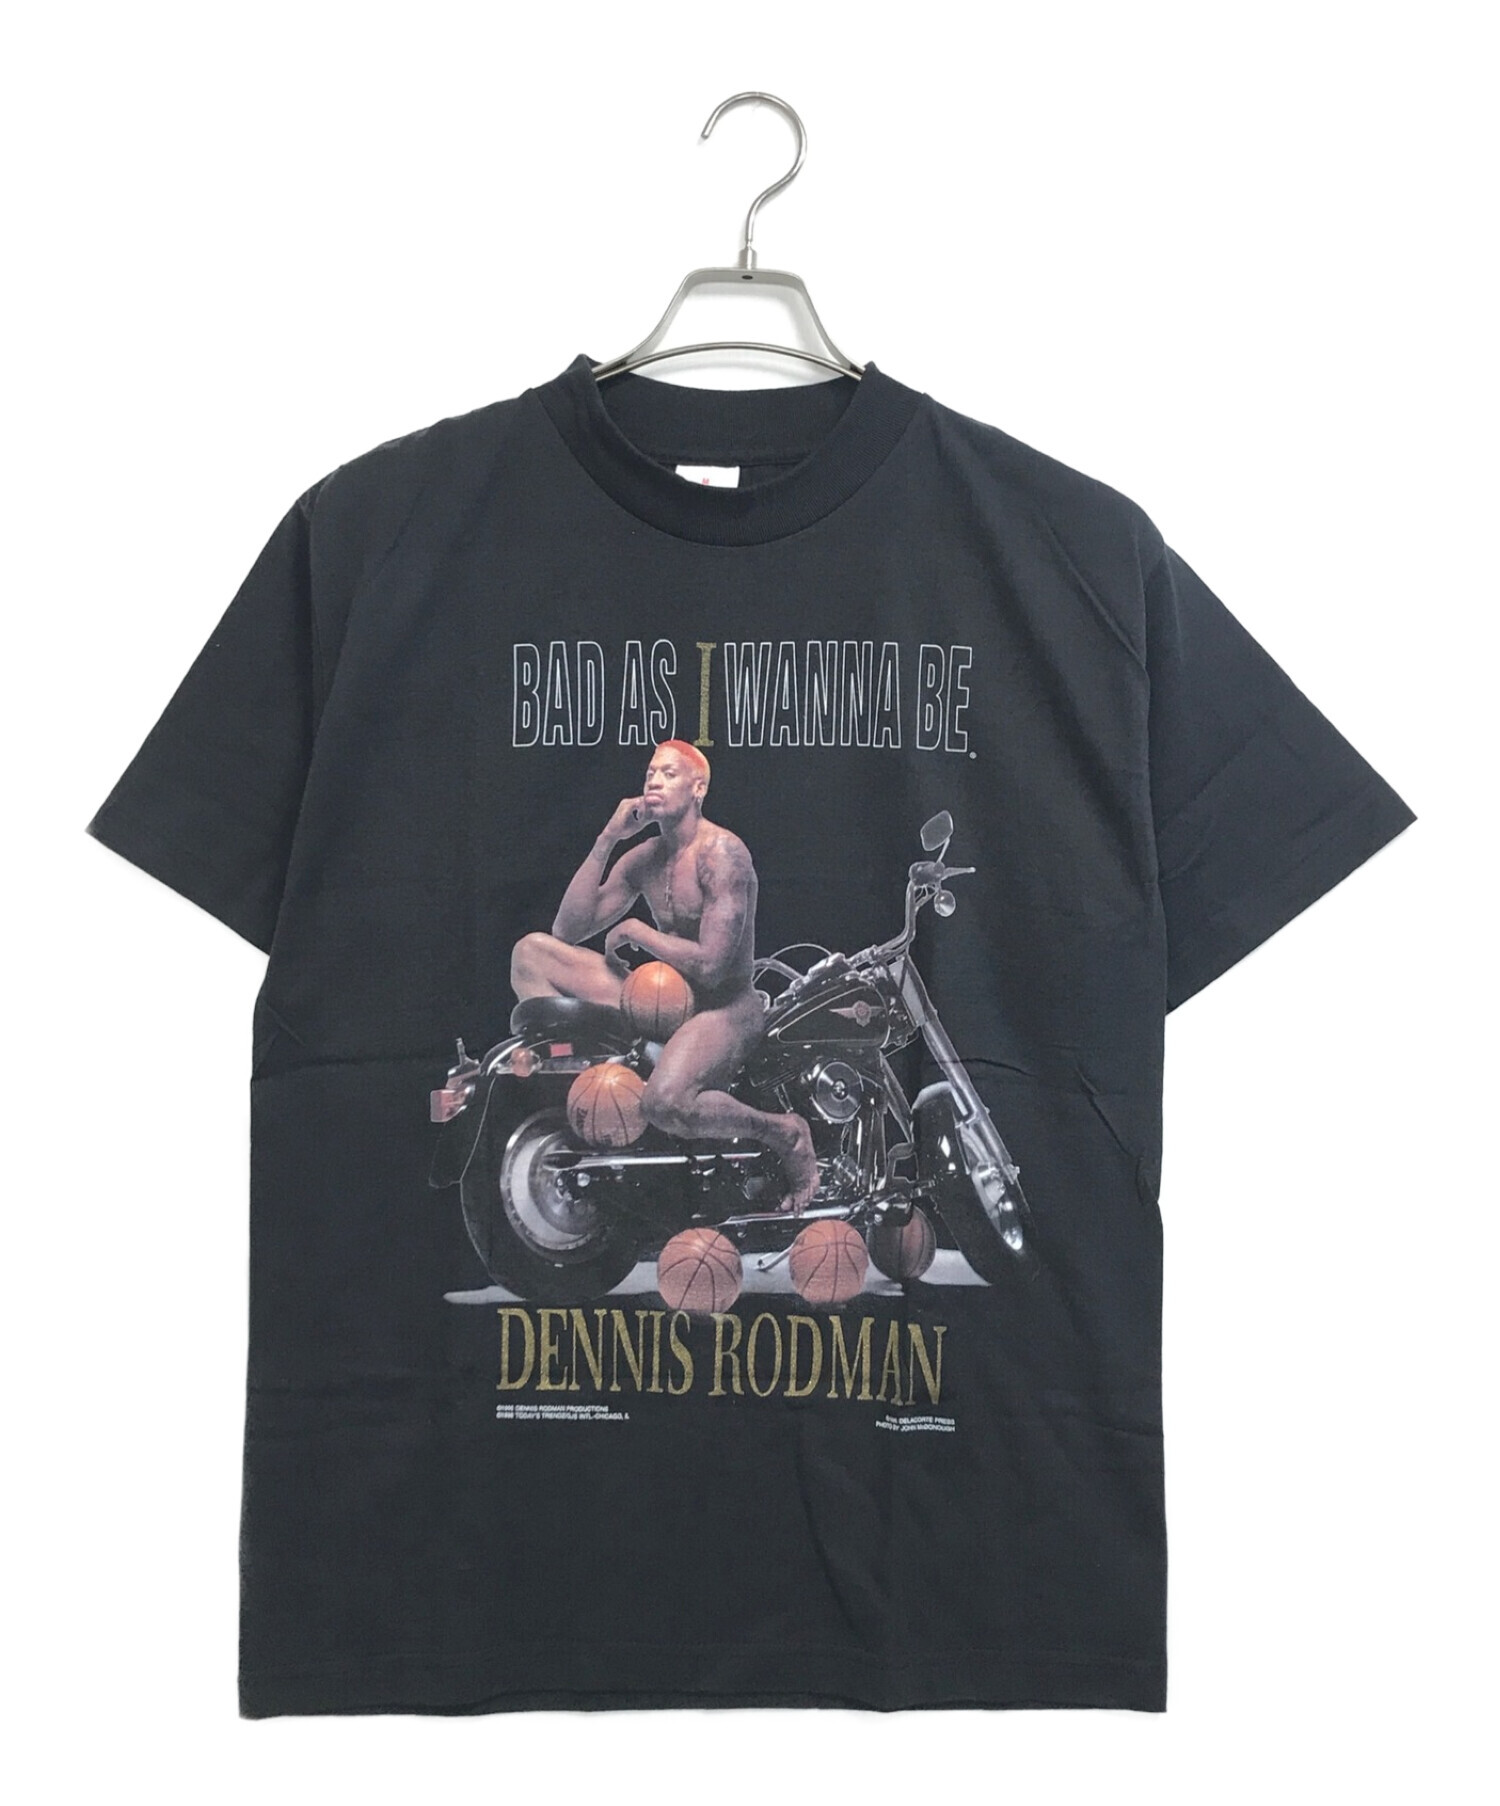 Dennis Rodman (デニスロッドマン) [古着]プリントTシャツ ブラック サイズ:M